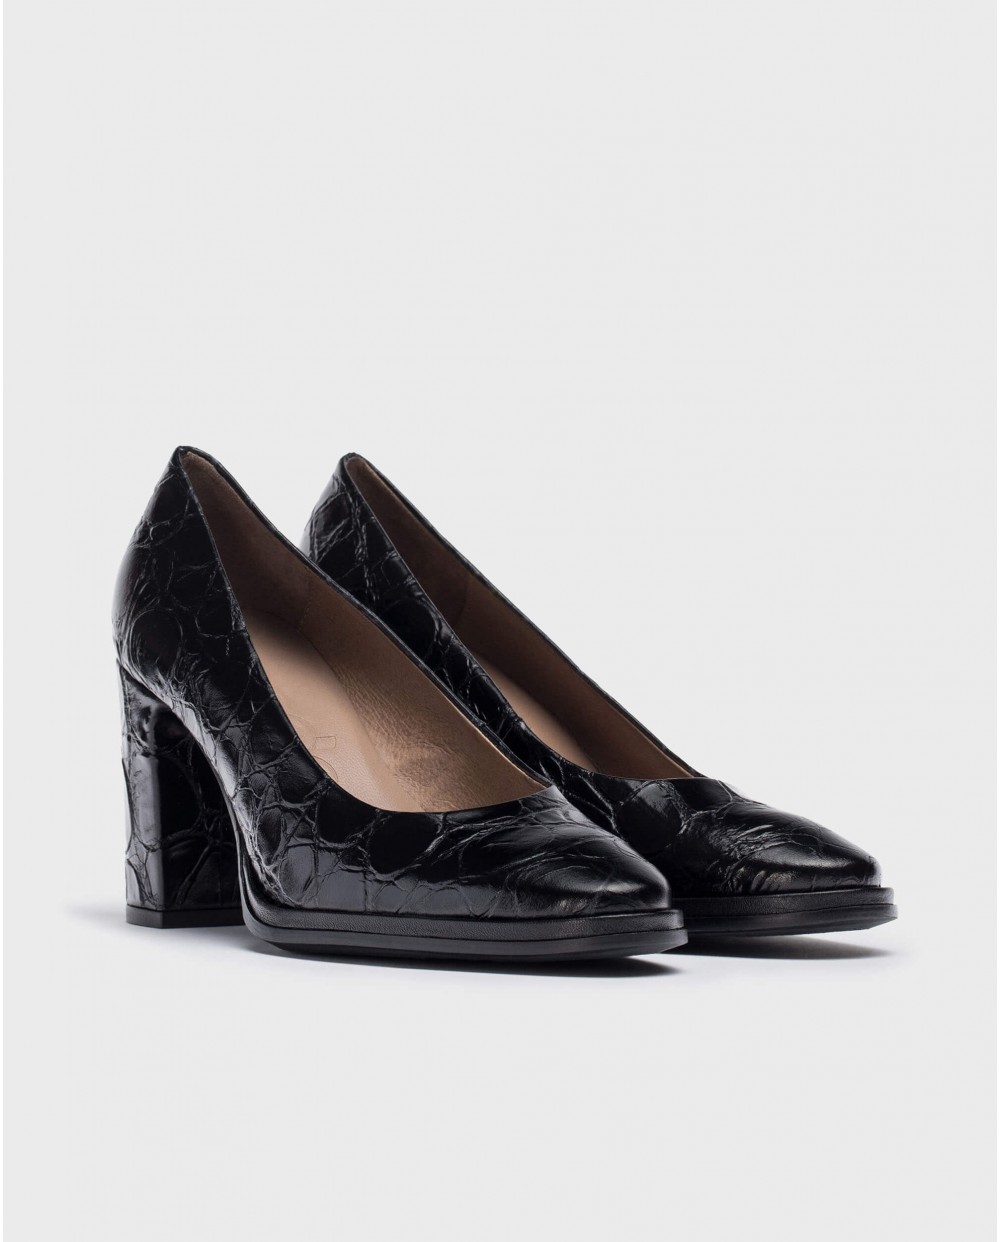 Wonders-Heels-Black DENIS high-heeled shoe